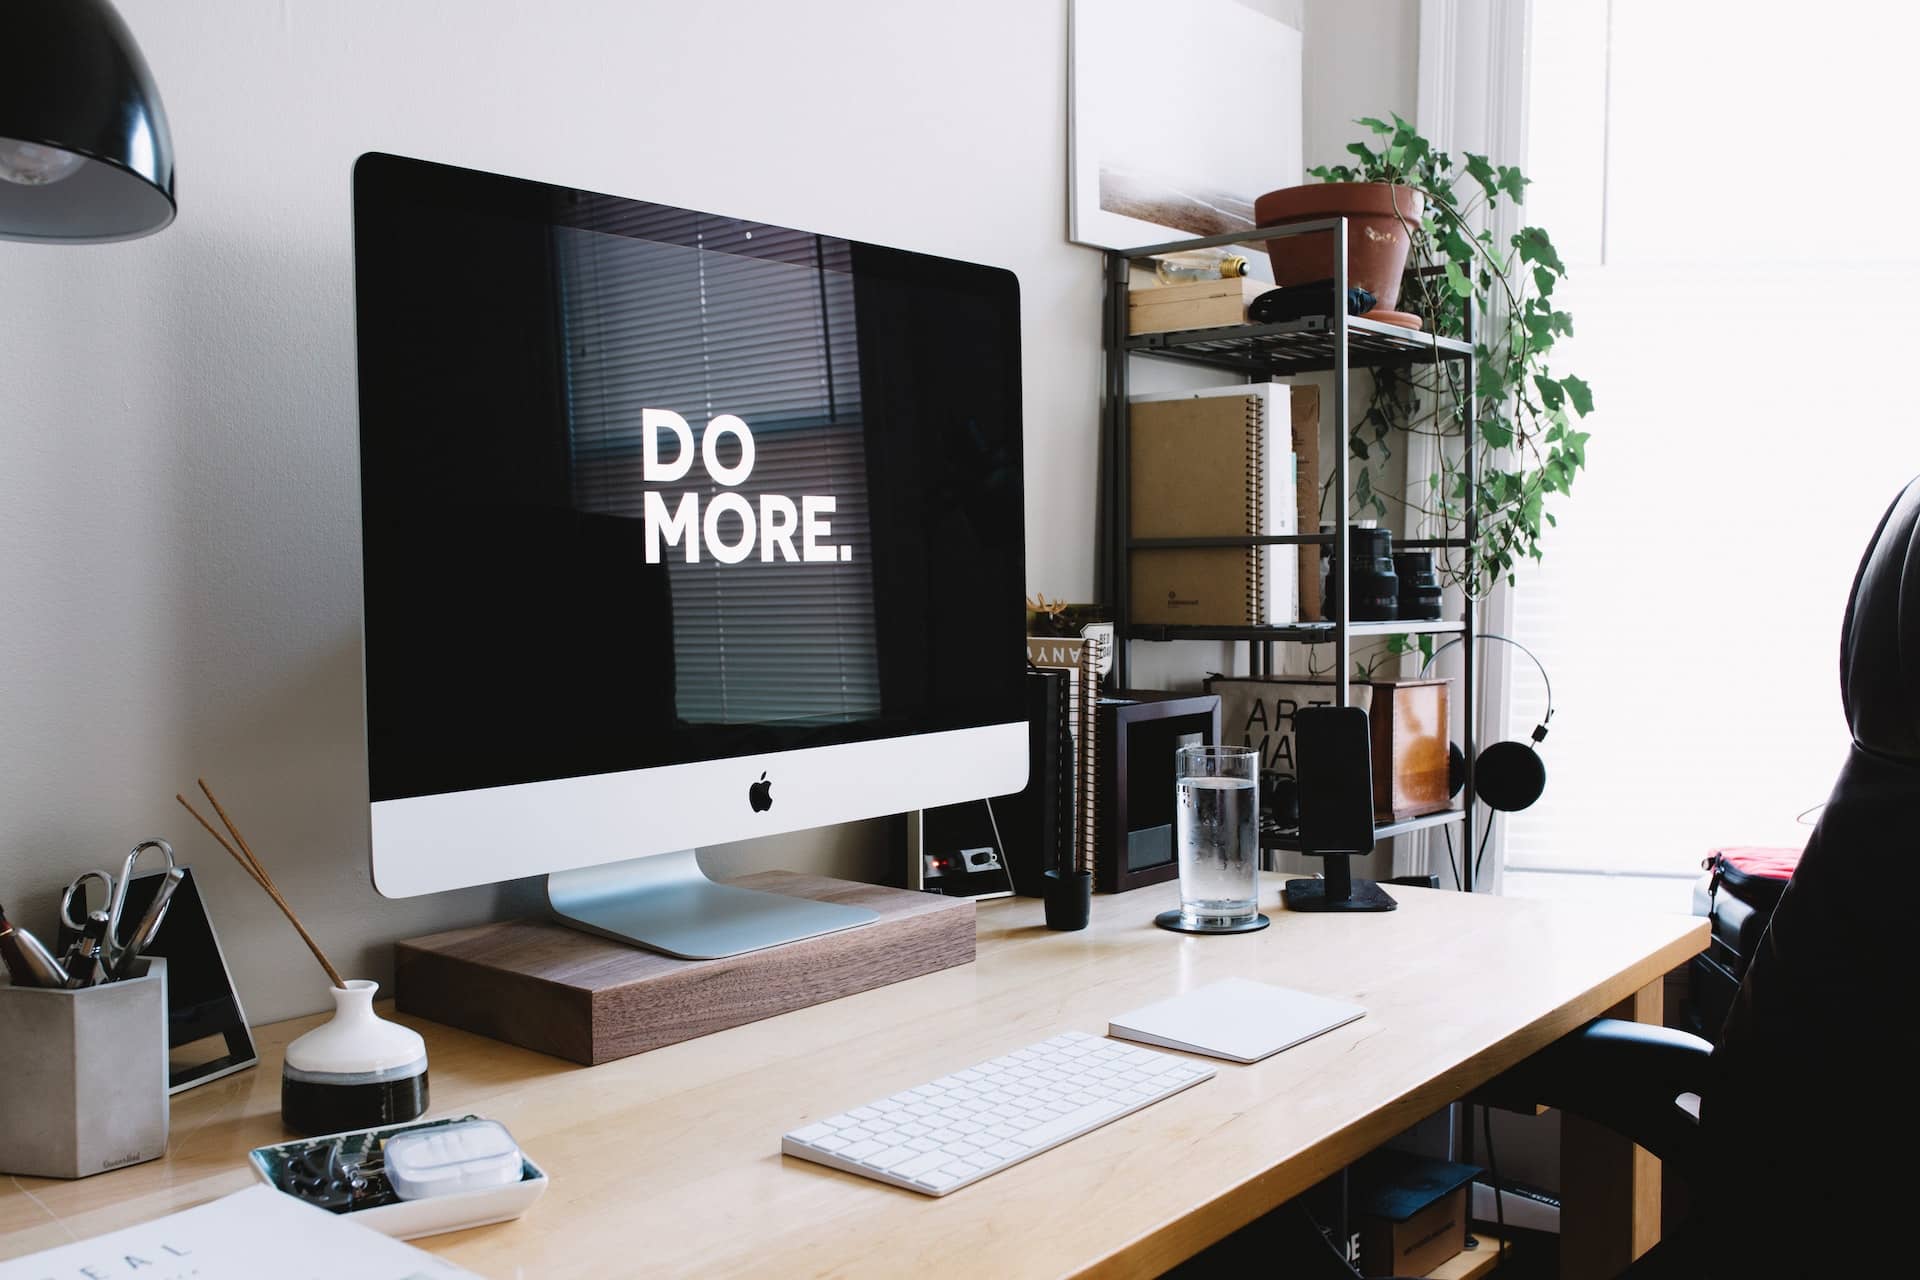 OneDrive für unterbrechungsfreie Arbeit, ToDo und Planner für Aufgabenmanagement und weitere Anregungen ihre Arbeitsalltag produktiver zu gestalten.